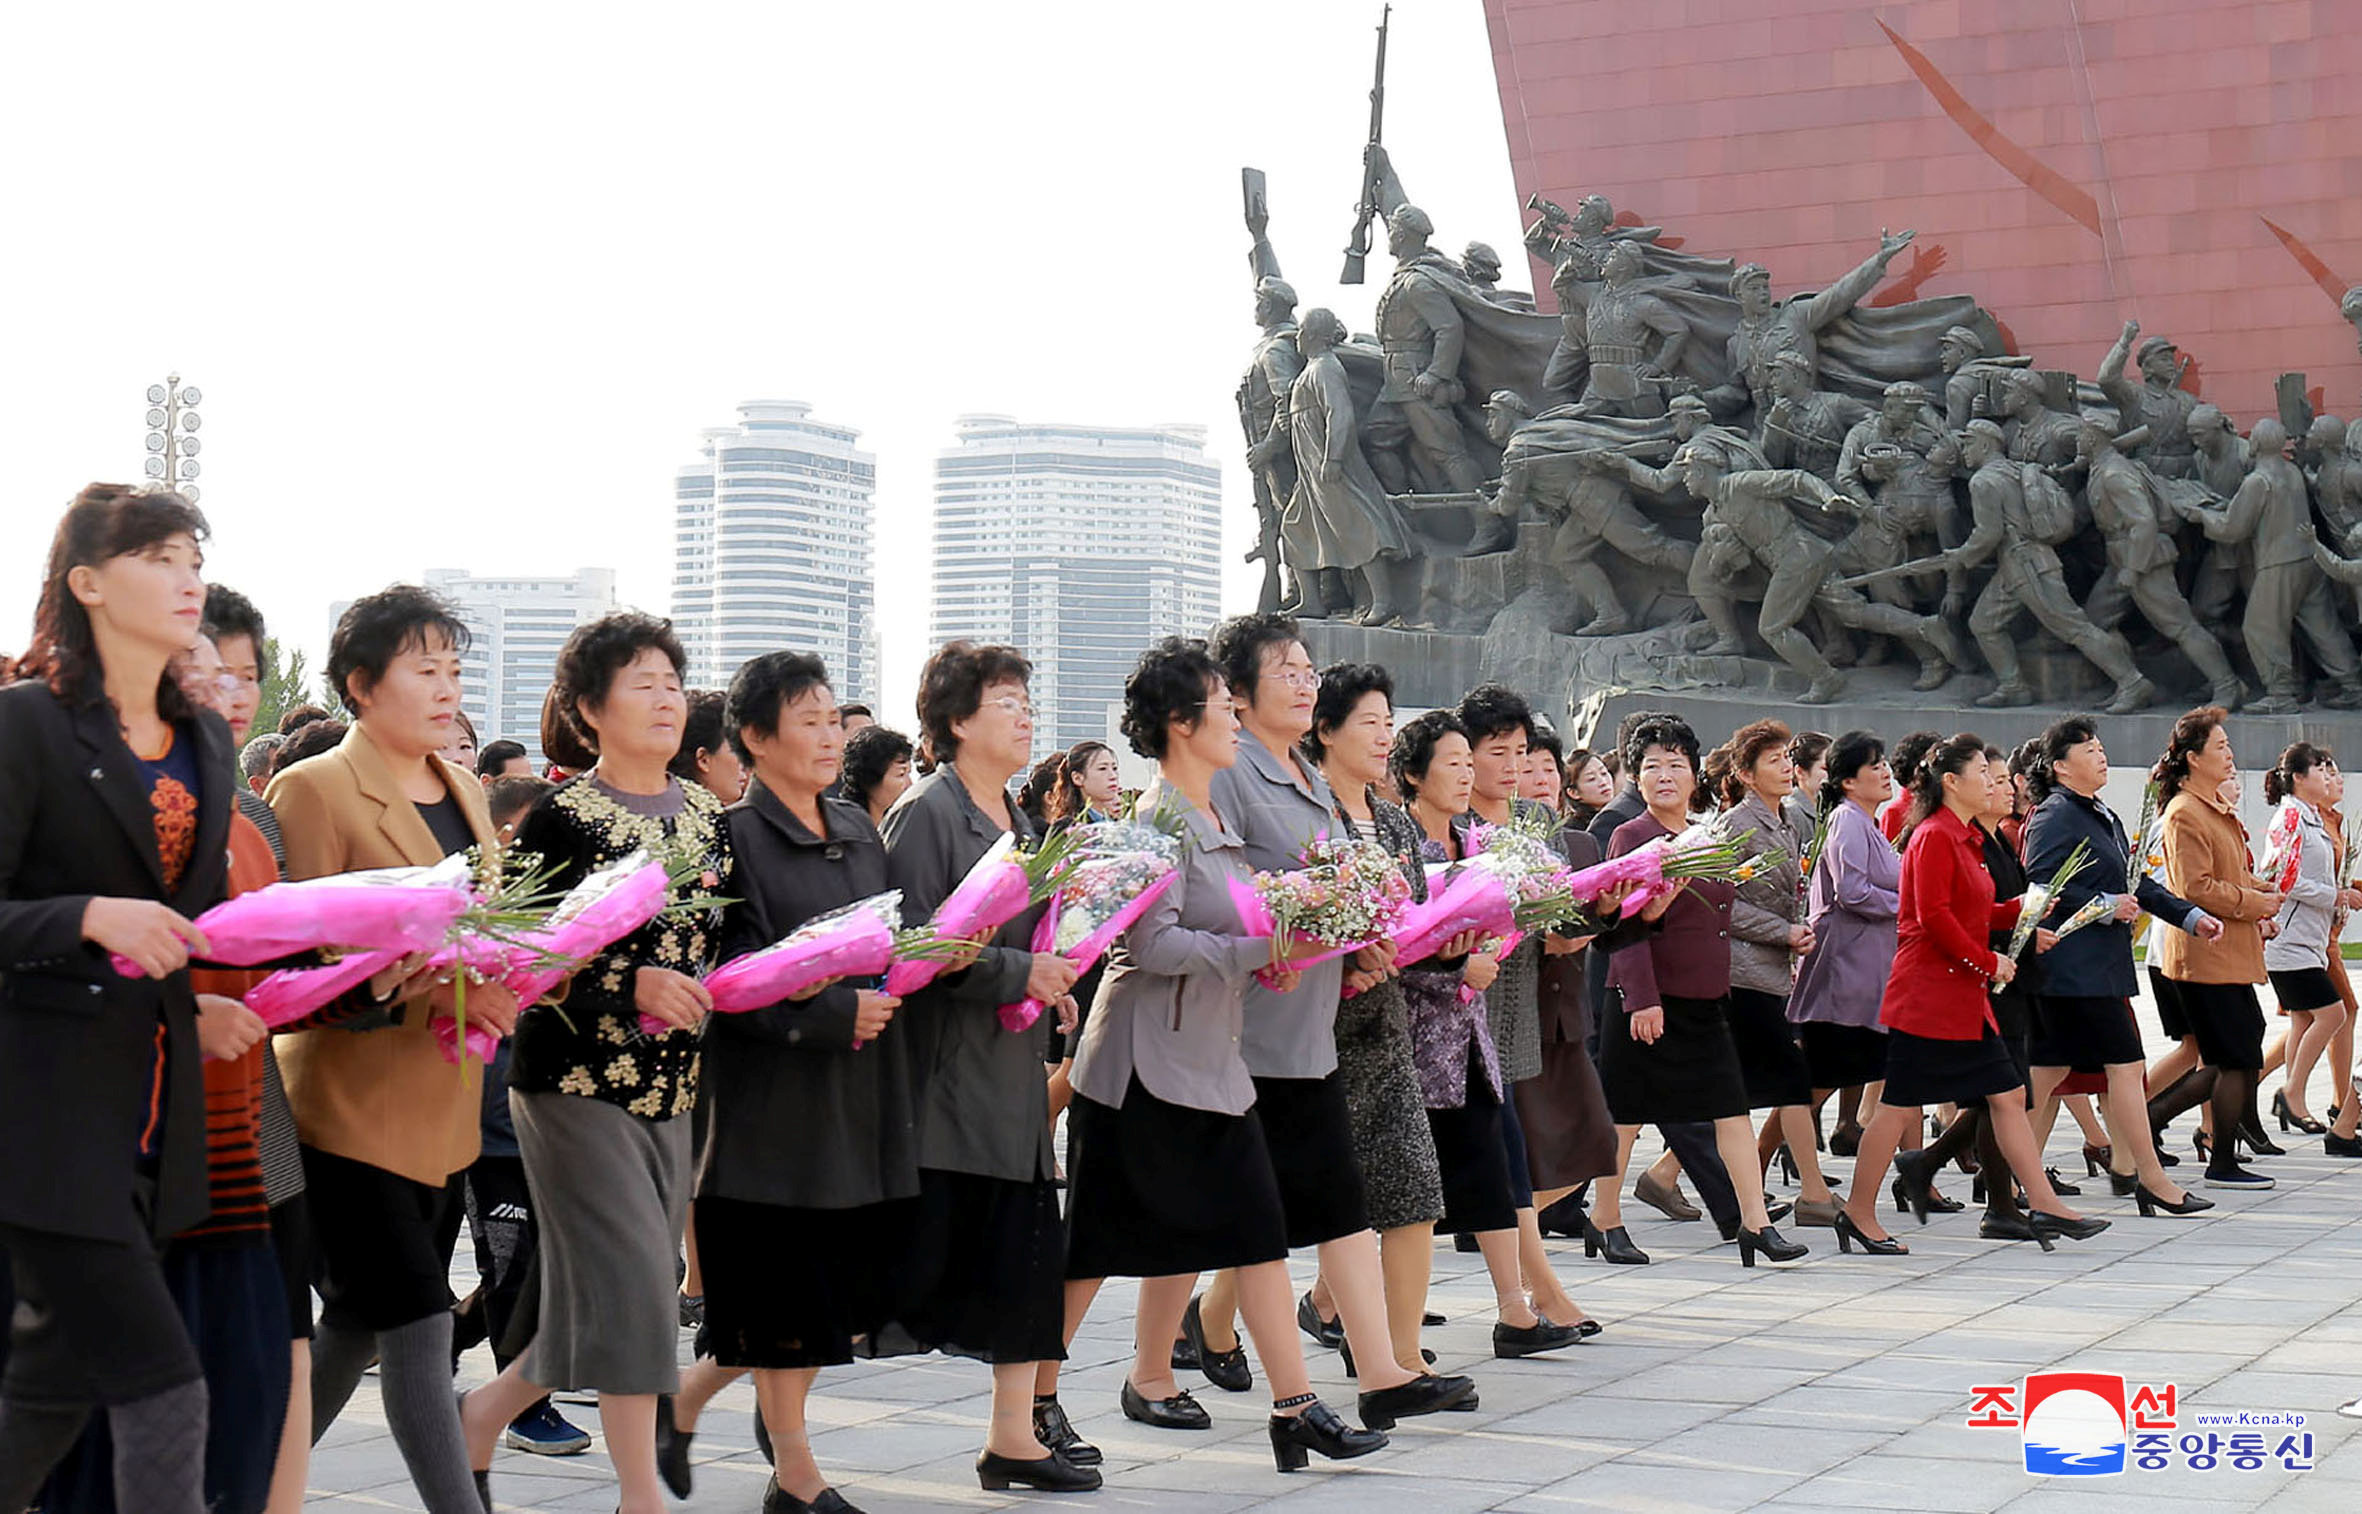 مواطنات كوريا الشمالية يحملون الورود أمام النصب التذكارى لمؤسس كوريا الشمالية